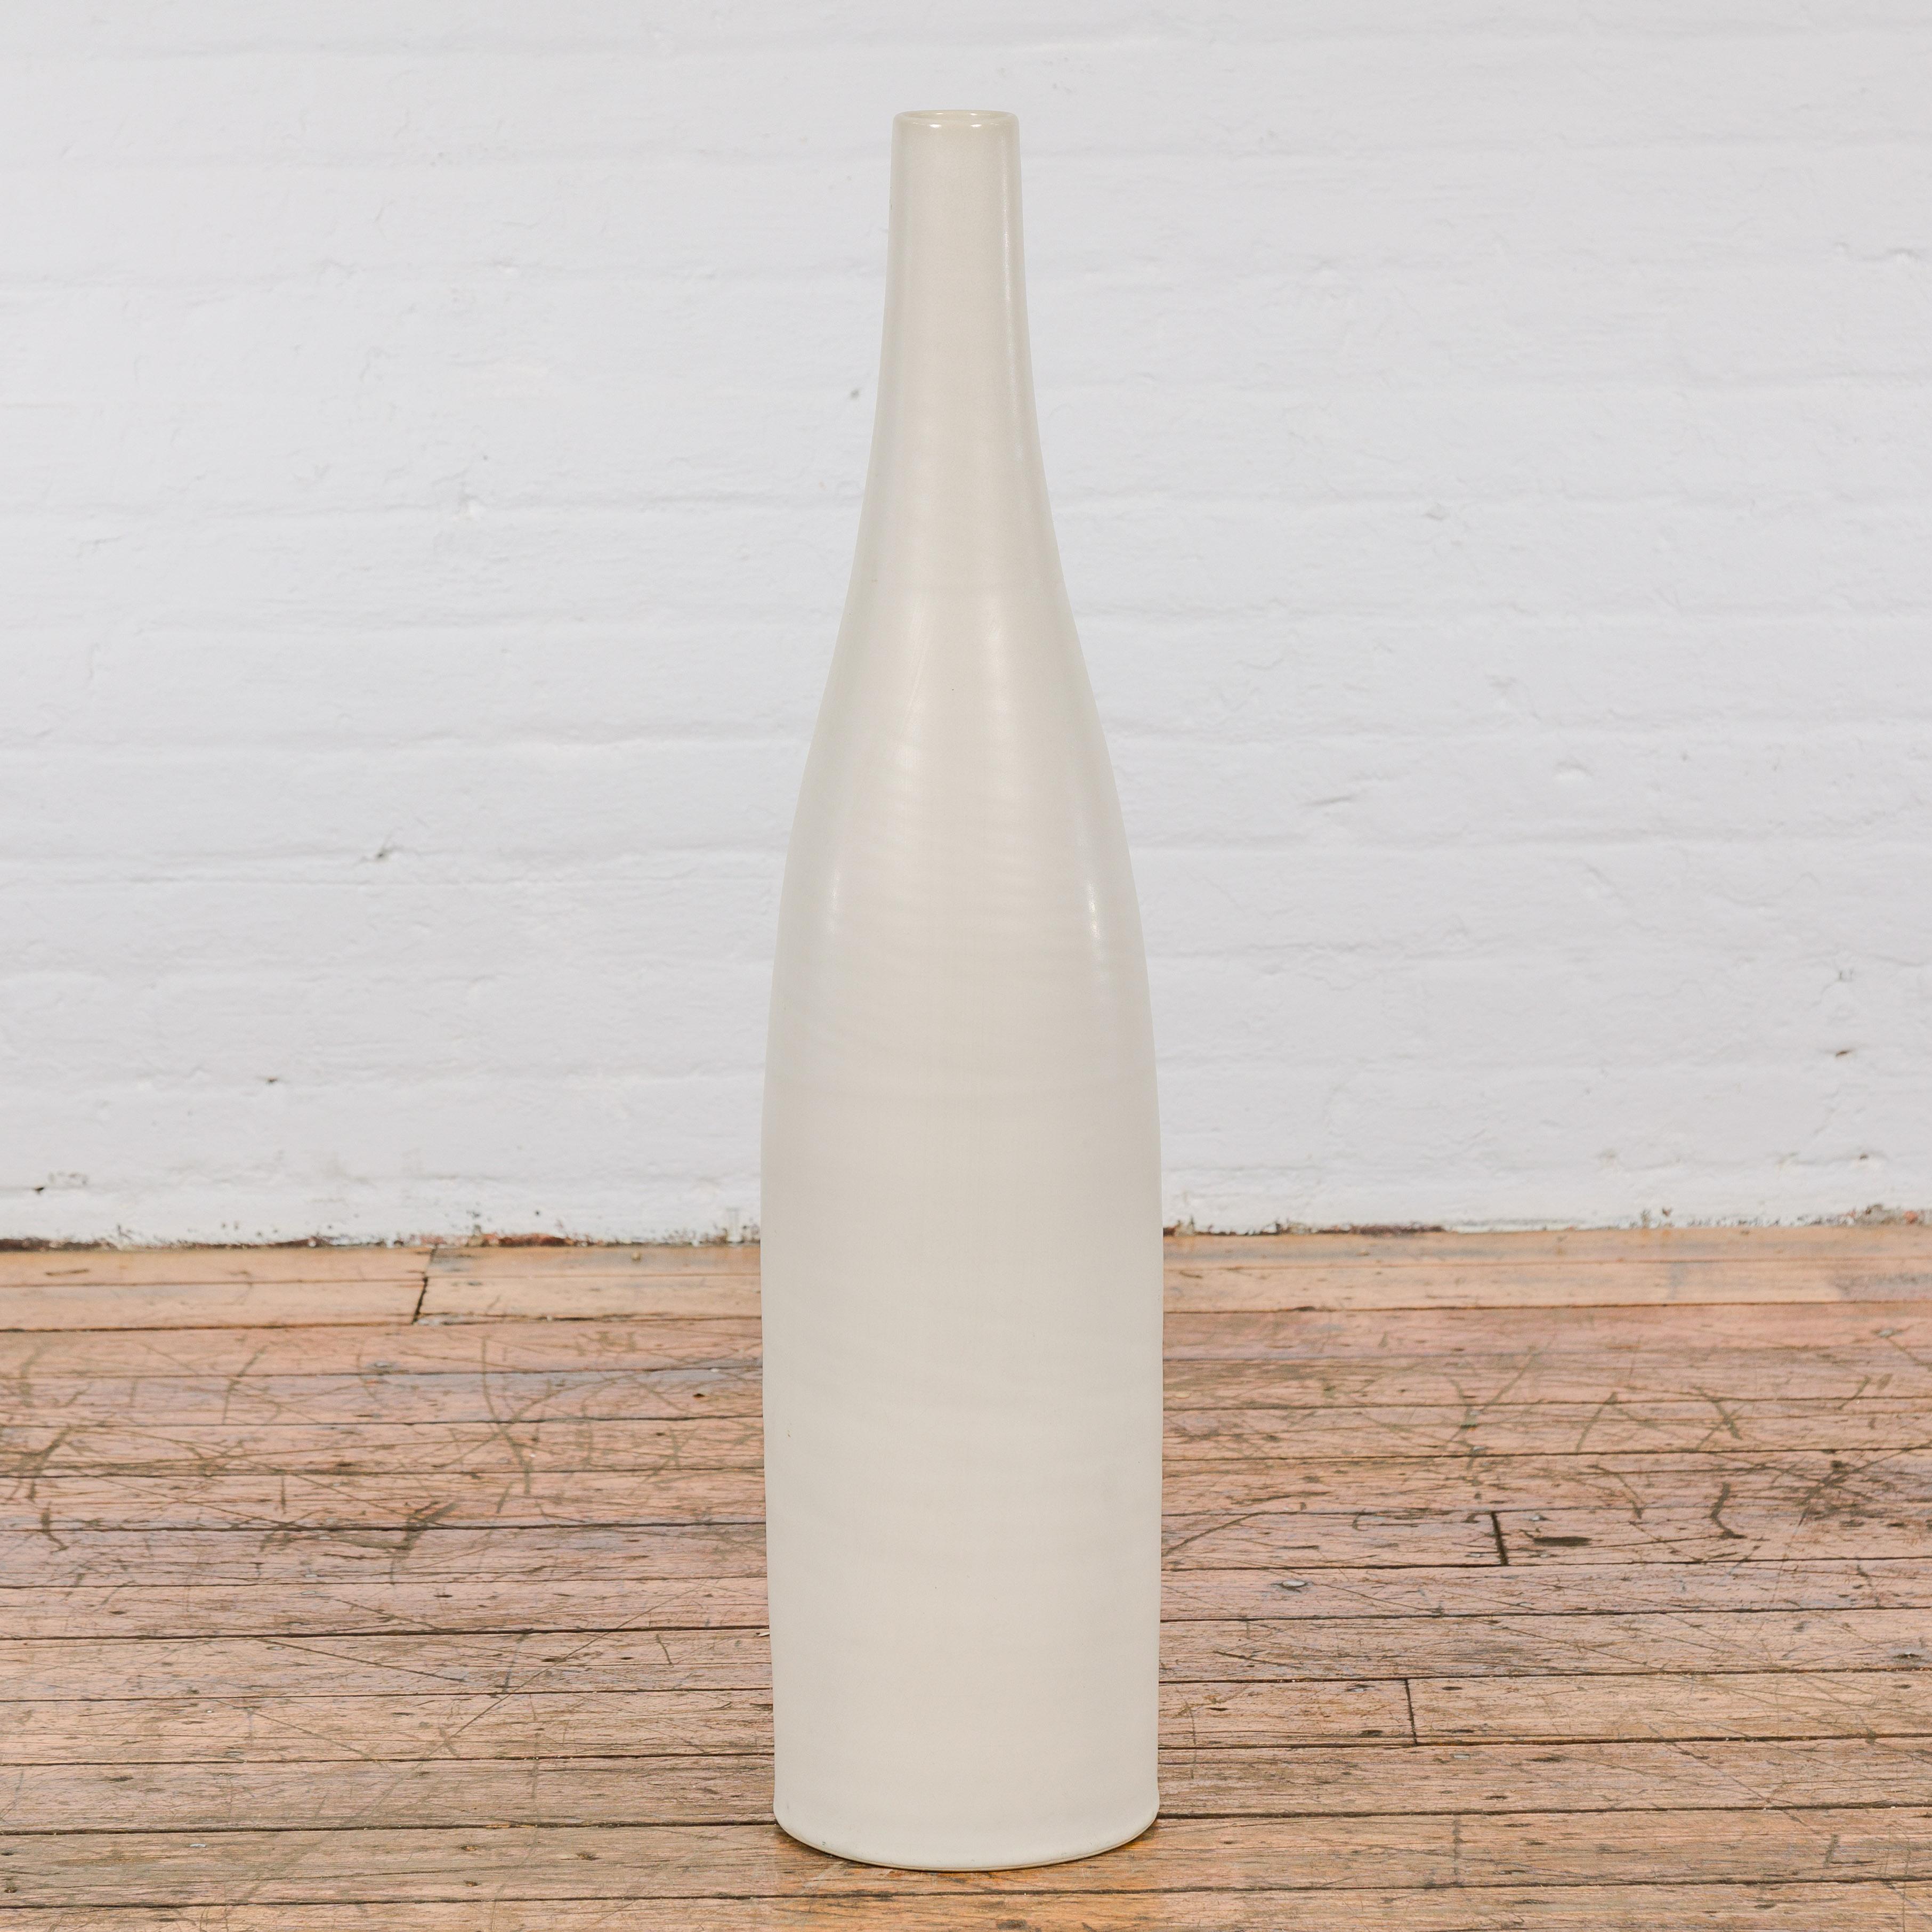 Vernissé Grand vase contemporain fait à la main avec glaçure crème et silhouette élancée en vente